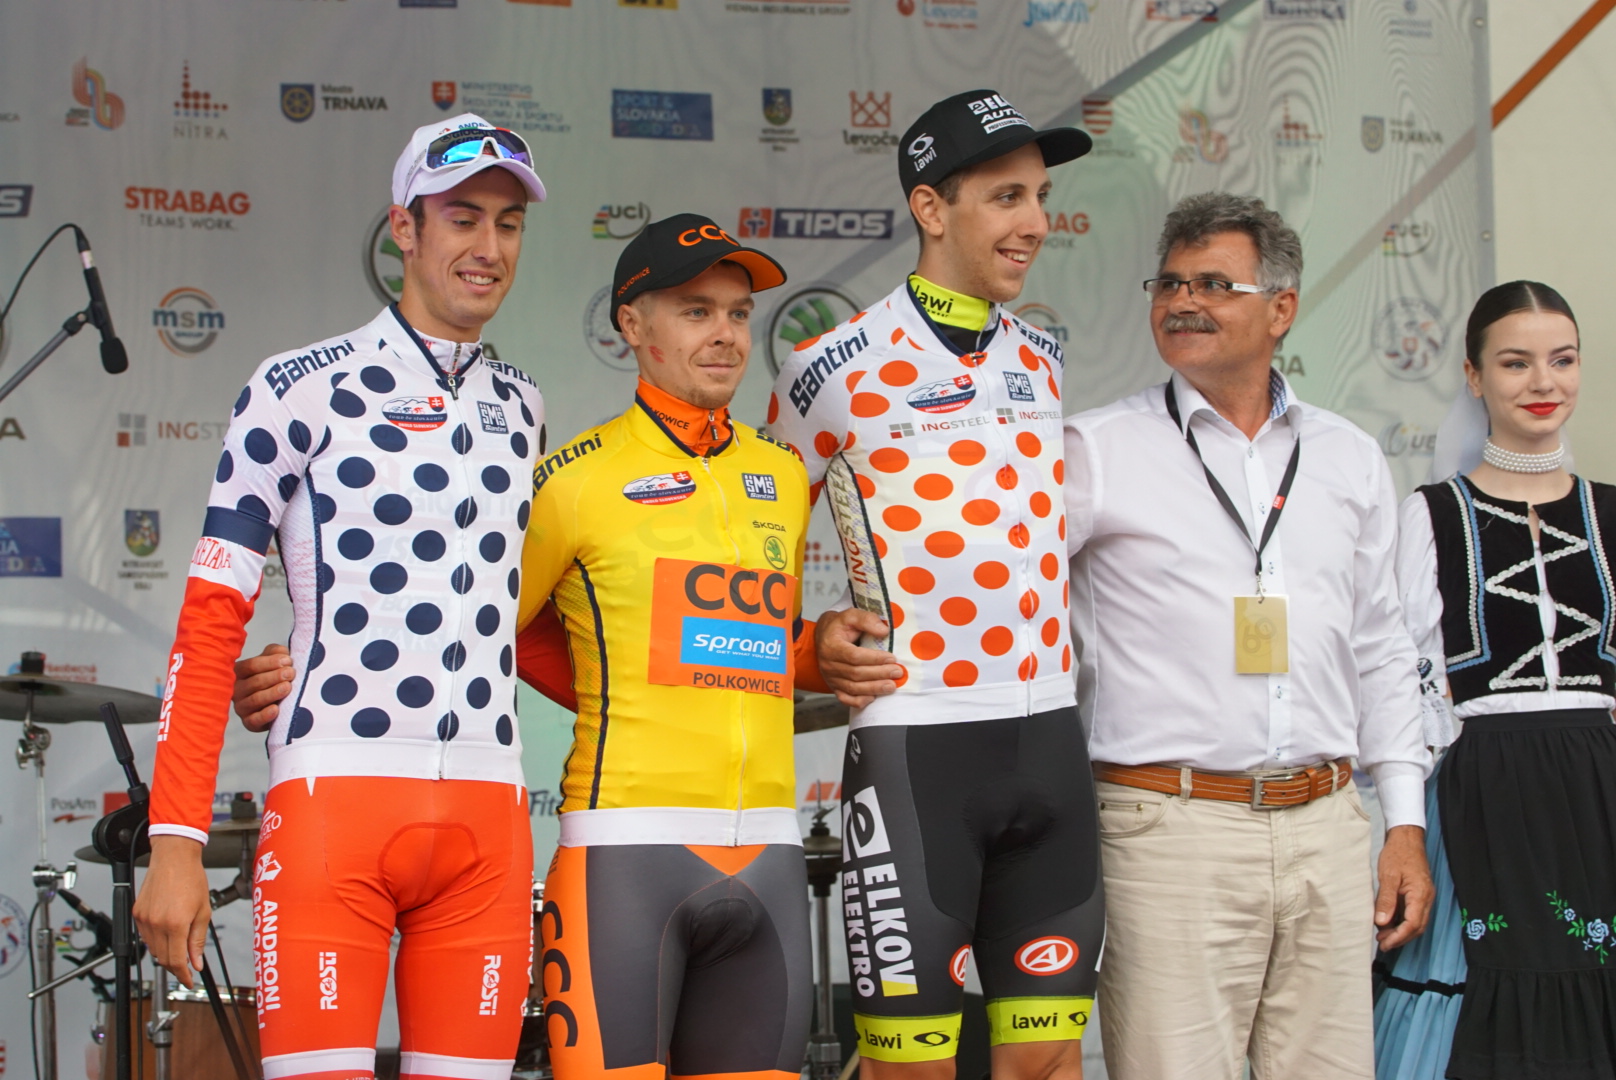 Il podio del prologo del Tour de Slovaquie 2017